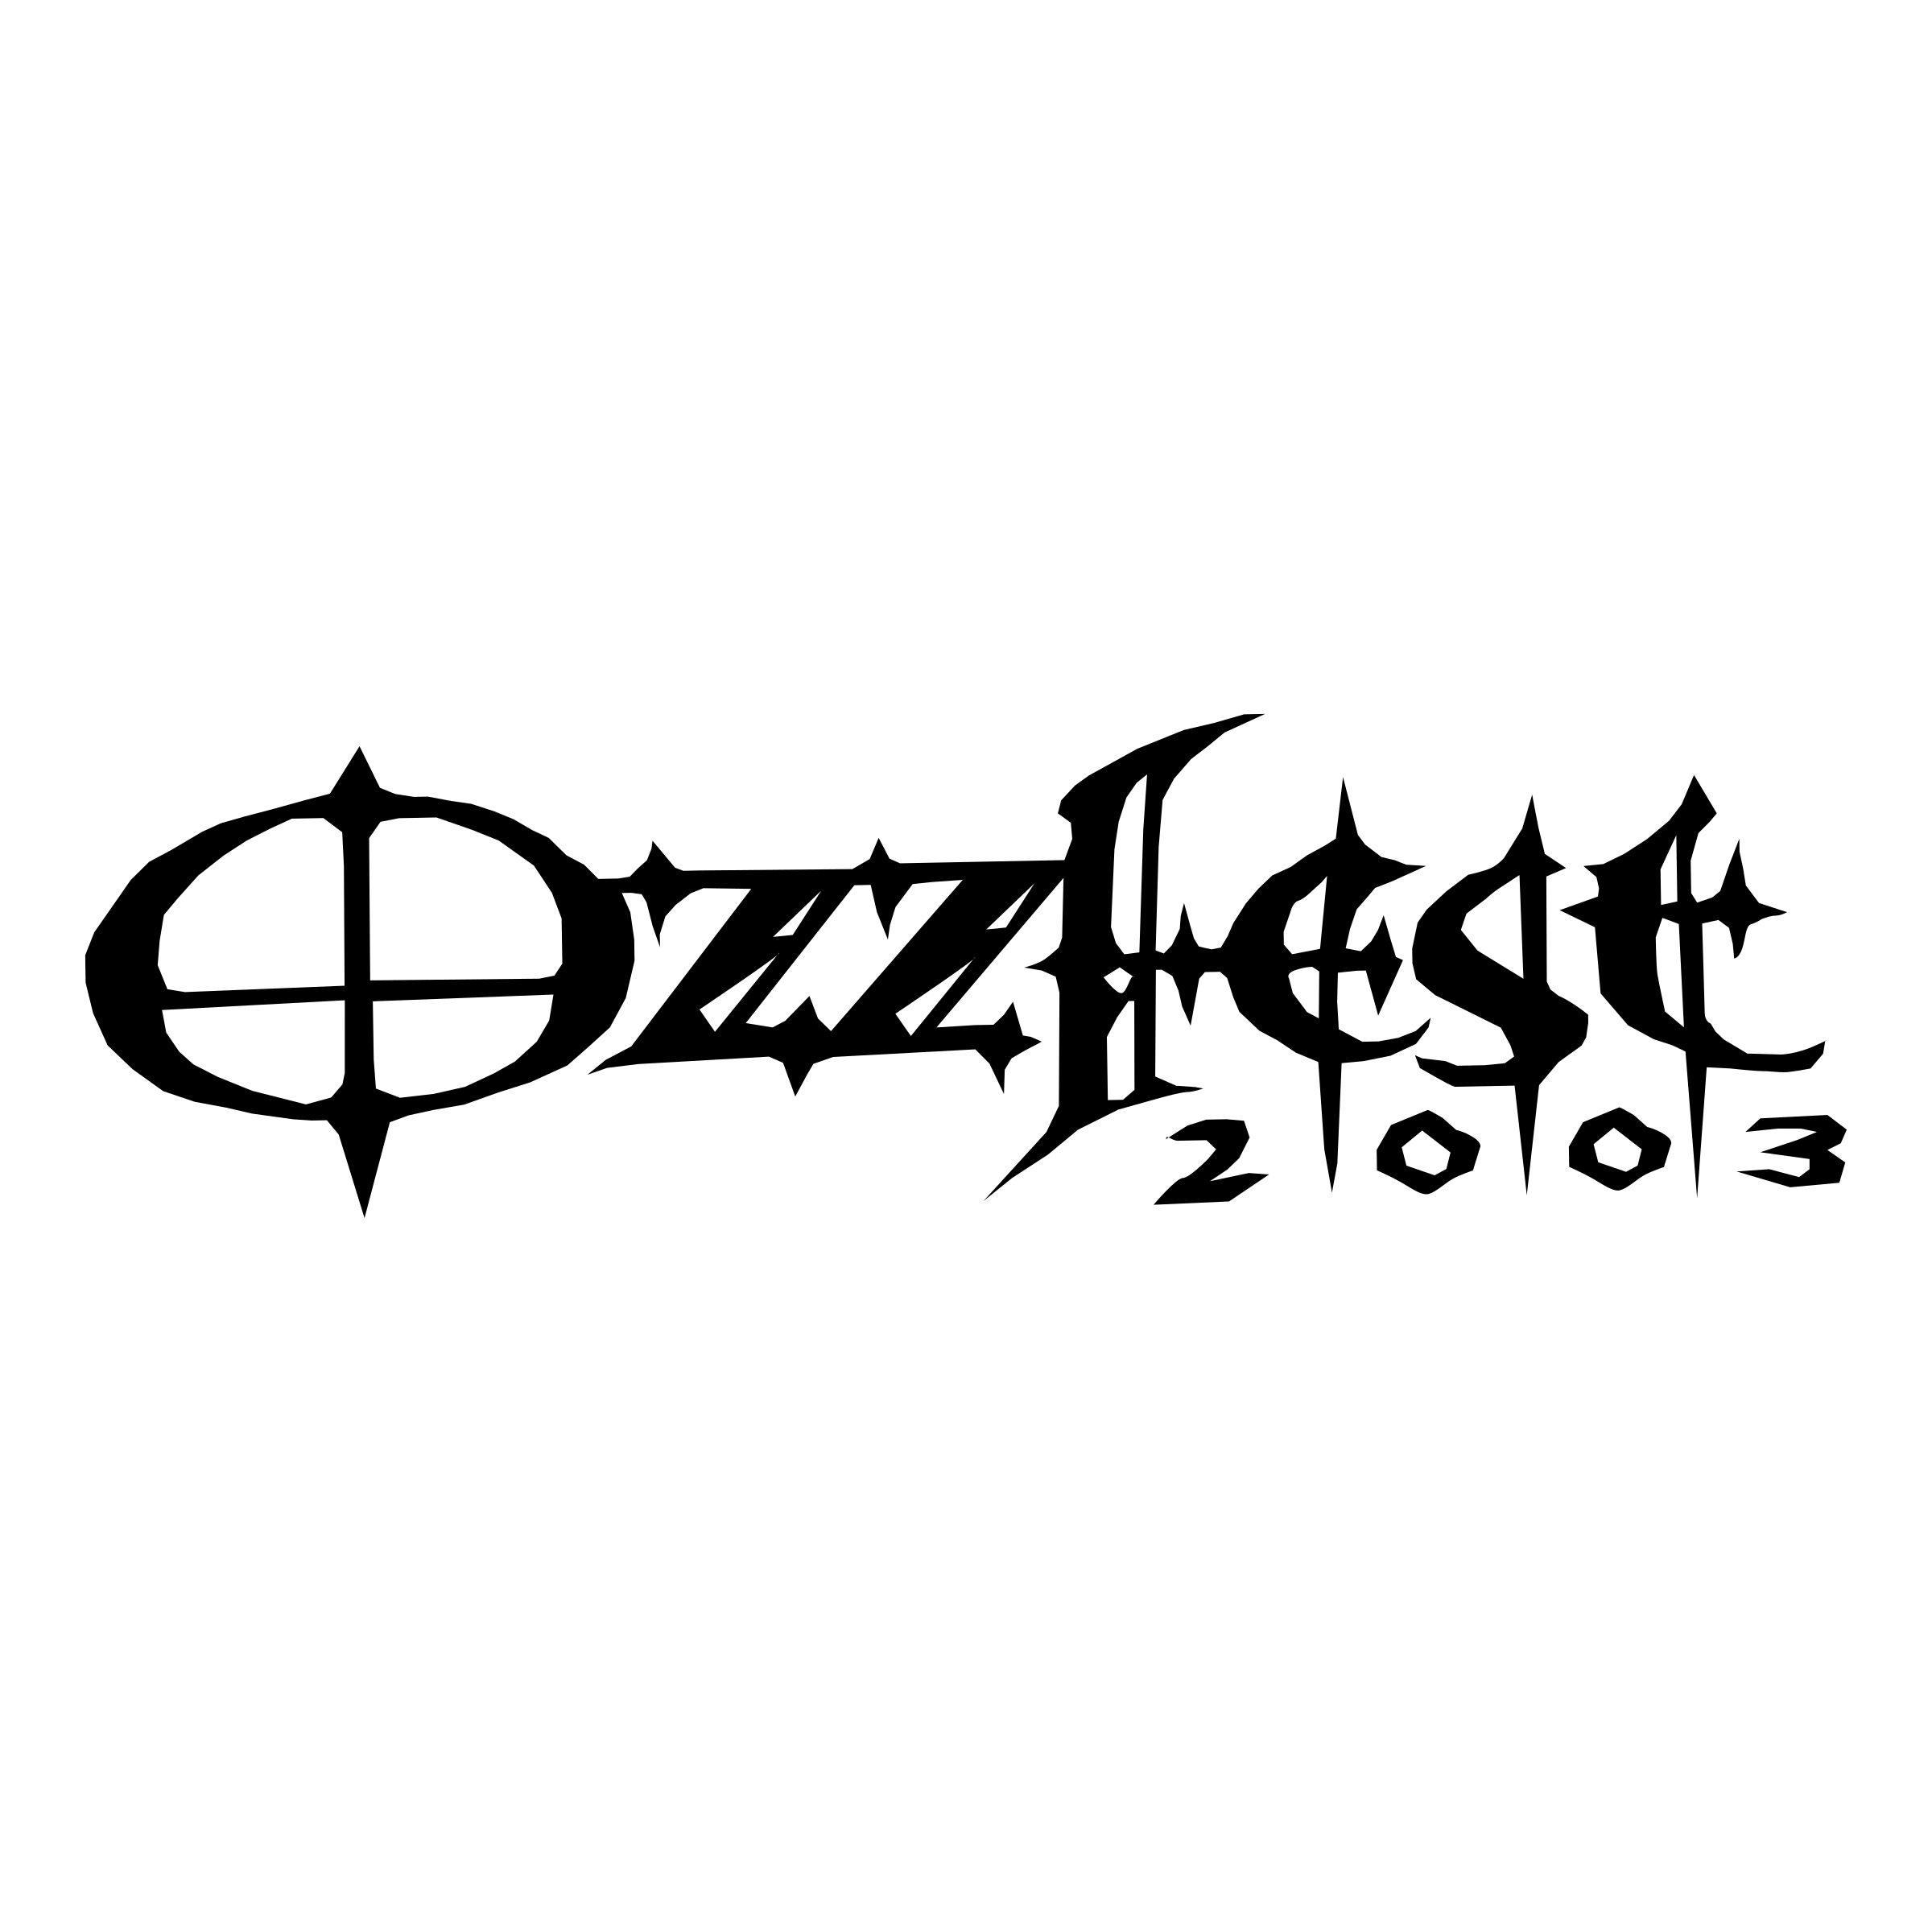 2003 Logo - Ozzfest 2003 Logo PNG Transparent & SVG Vector